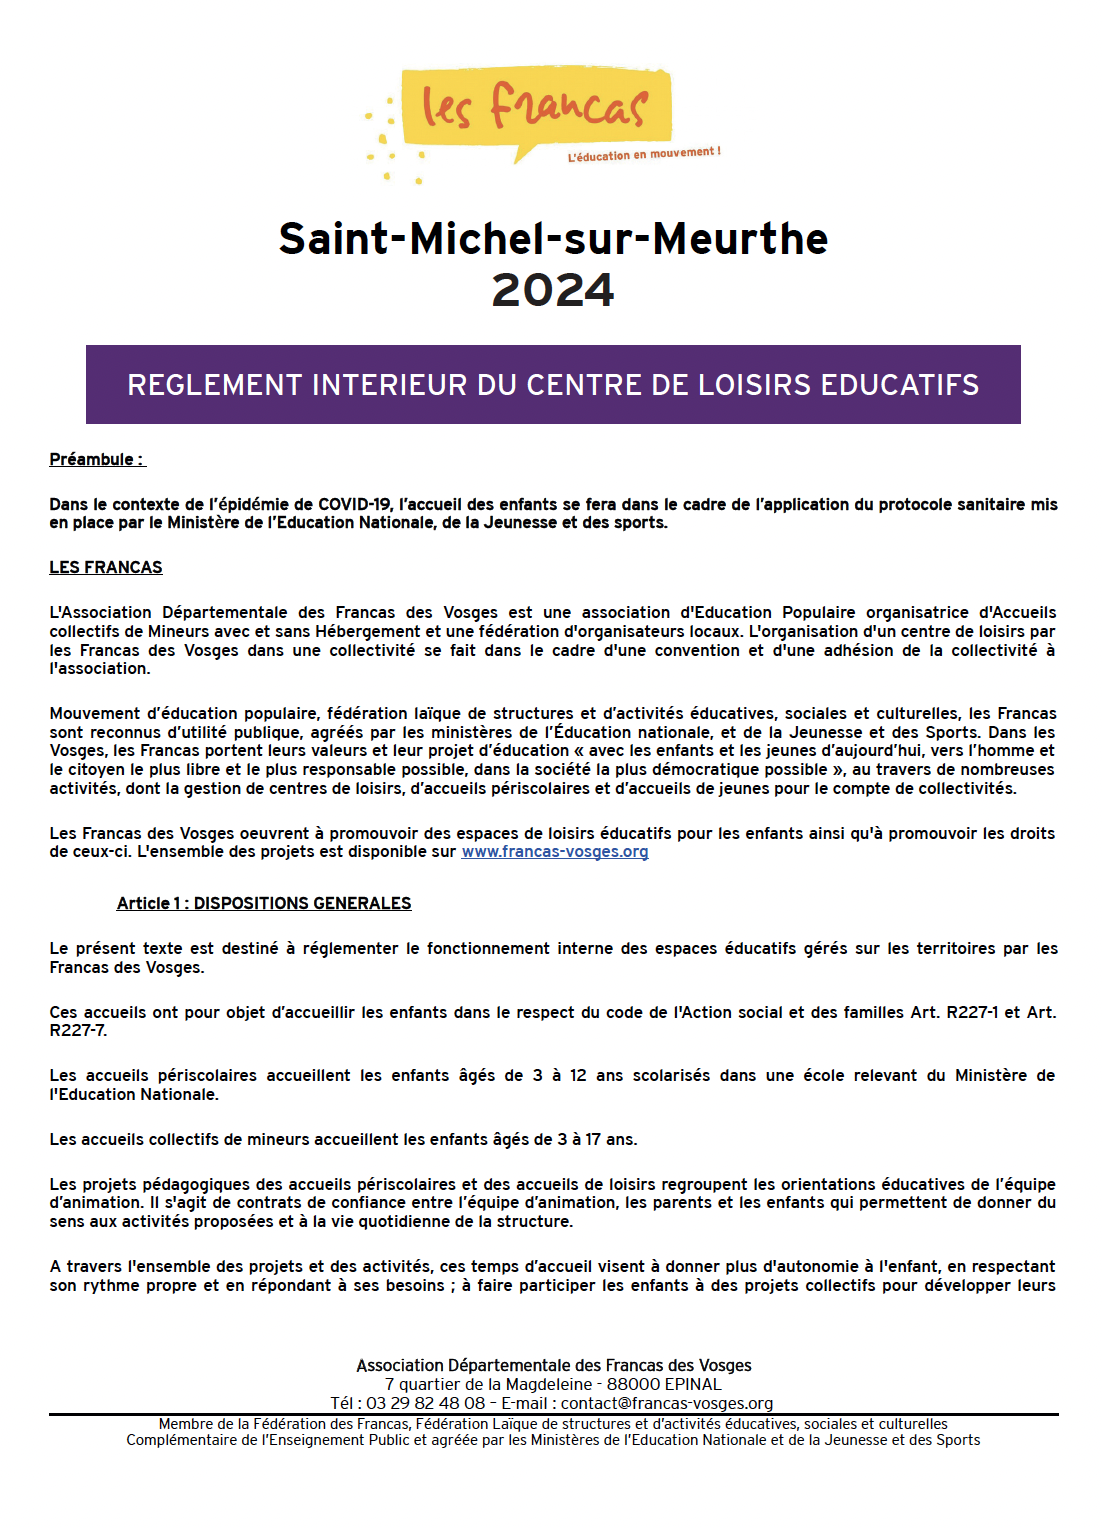 Règlement intérieur Saint-Michel 2024